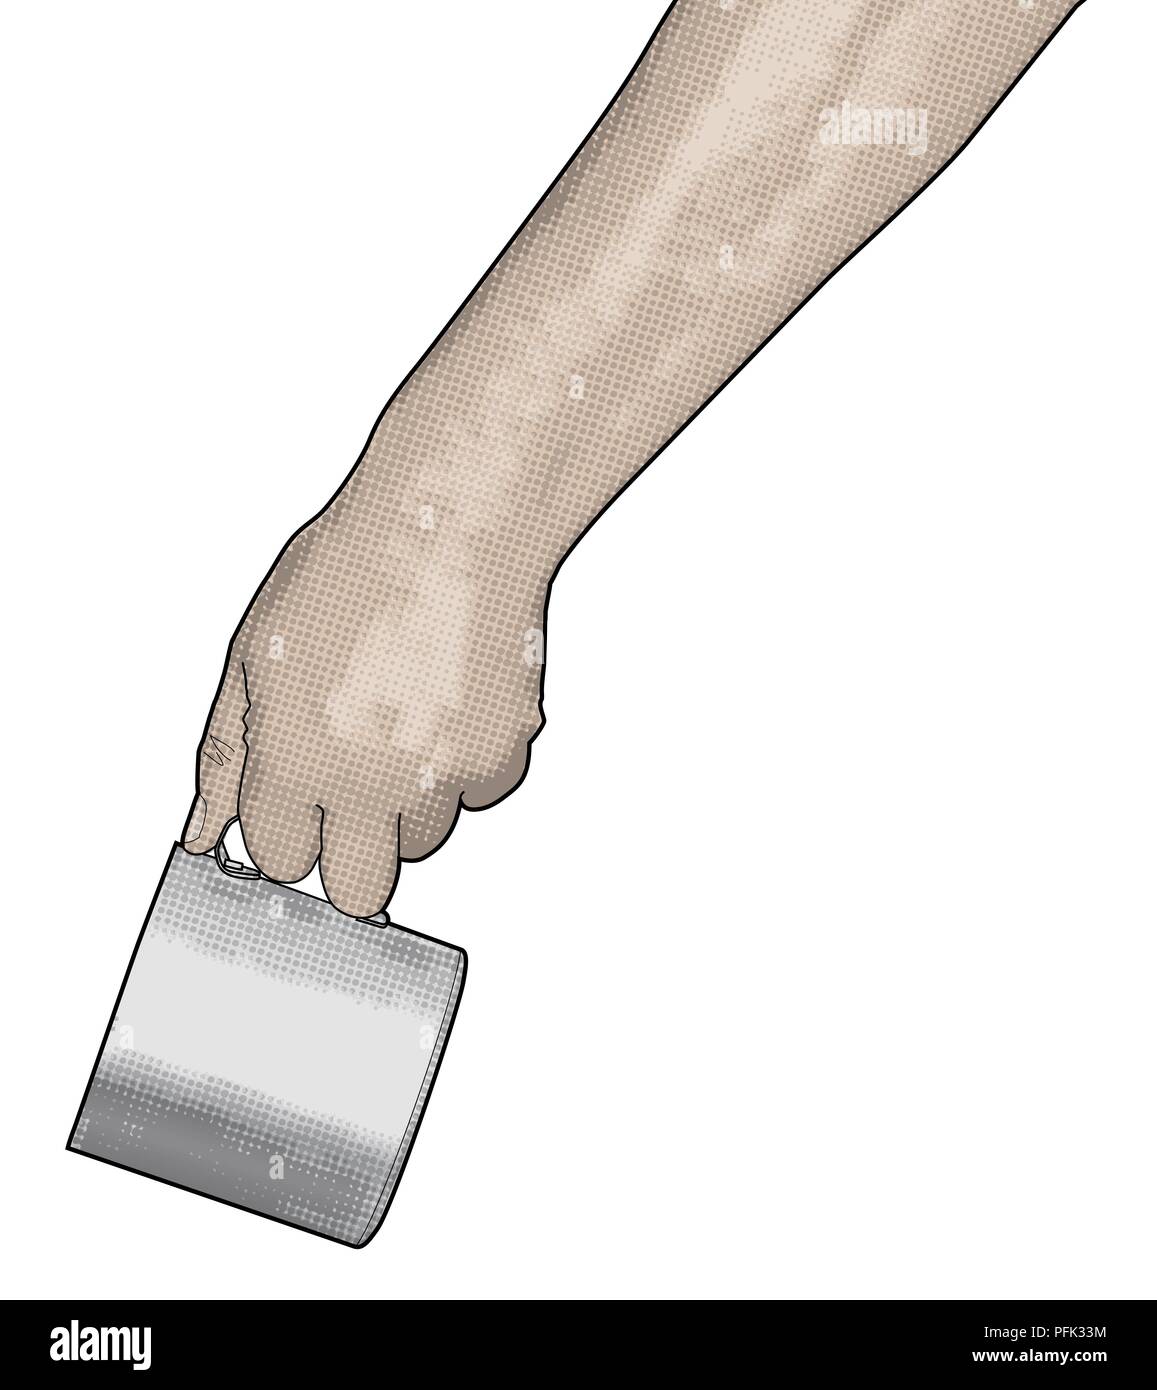 Digital illustration of hand holding mug Stock Photo